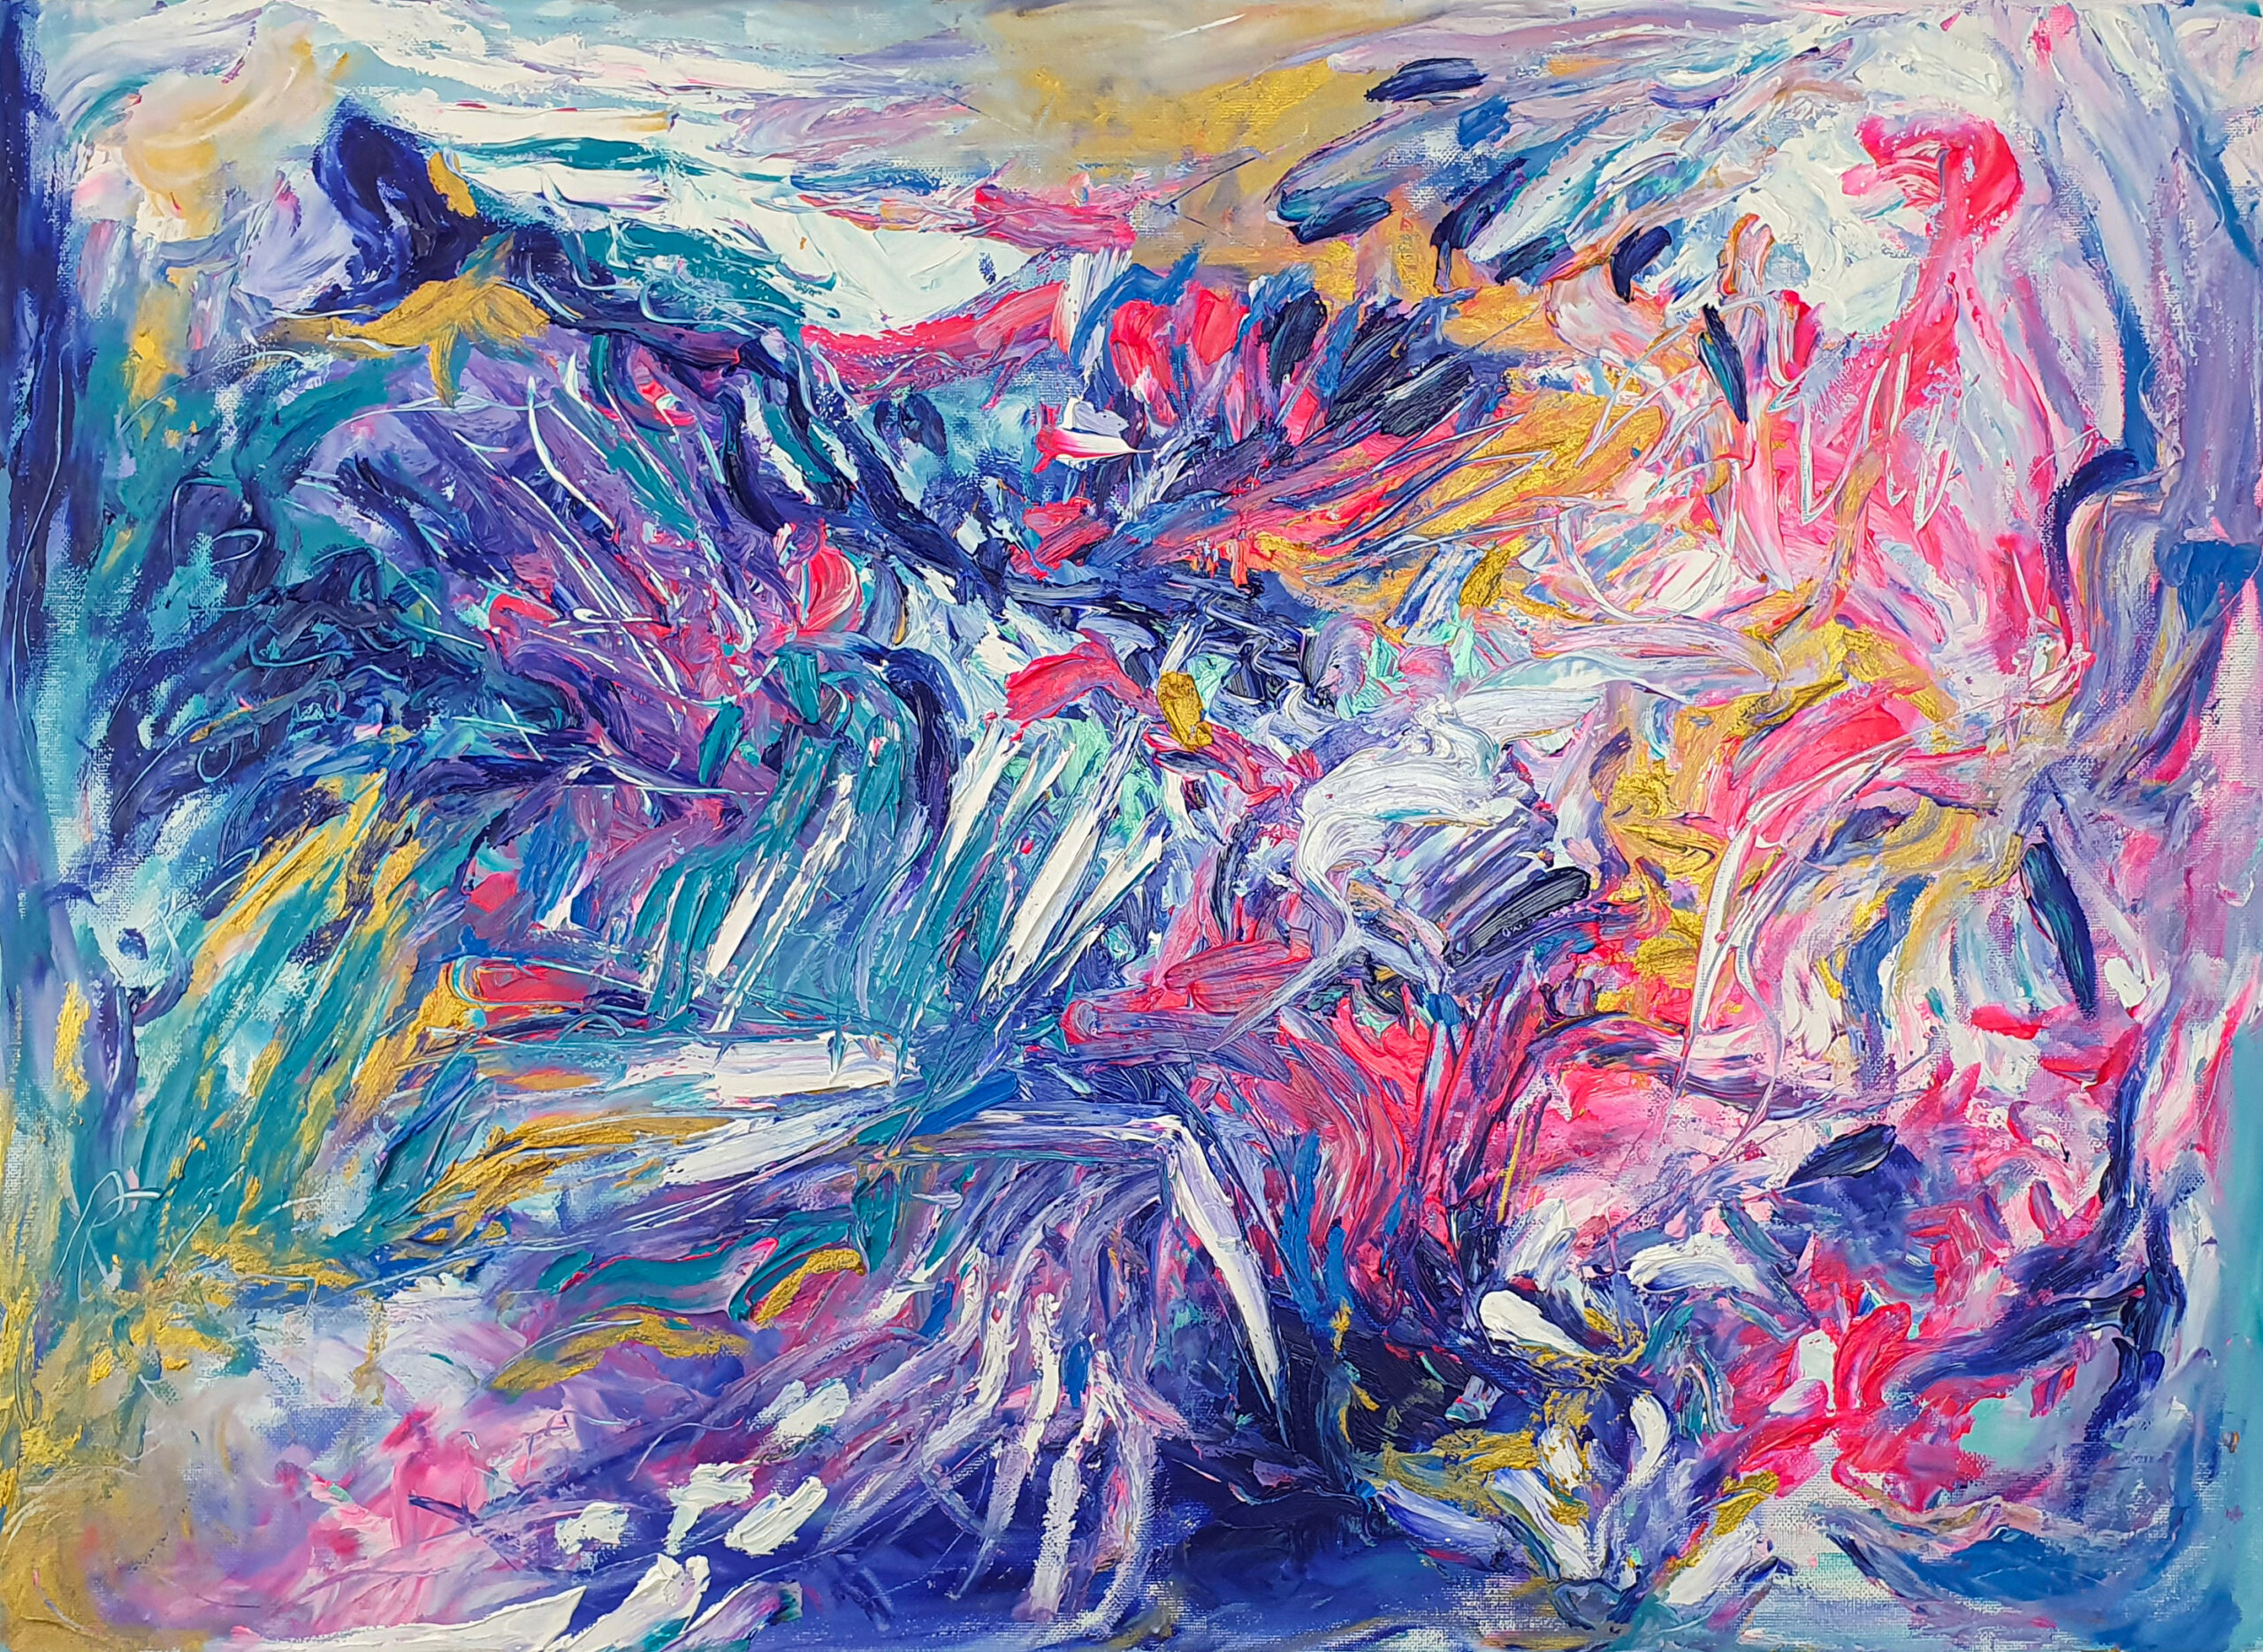 tableau-abstrait-huile-couleur-bleu-rose-dore-exture-artiste-peuntre-zohra-hassabi-art-contemporain